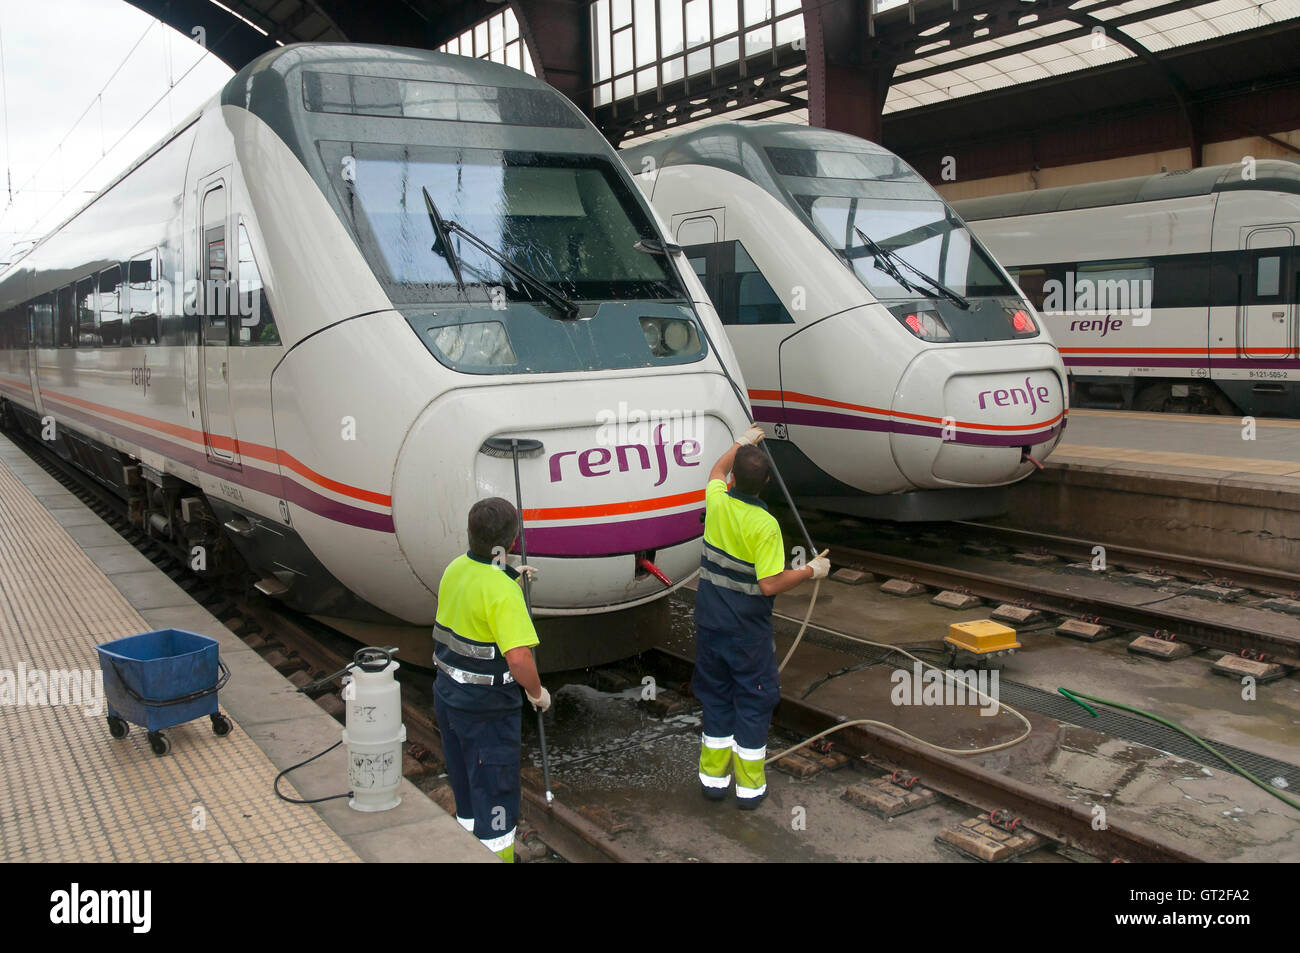 Railway station - Reinigung der Züge, La Coruna, Region Galicien, Spanien, Europa Stockfoto